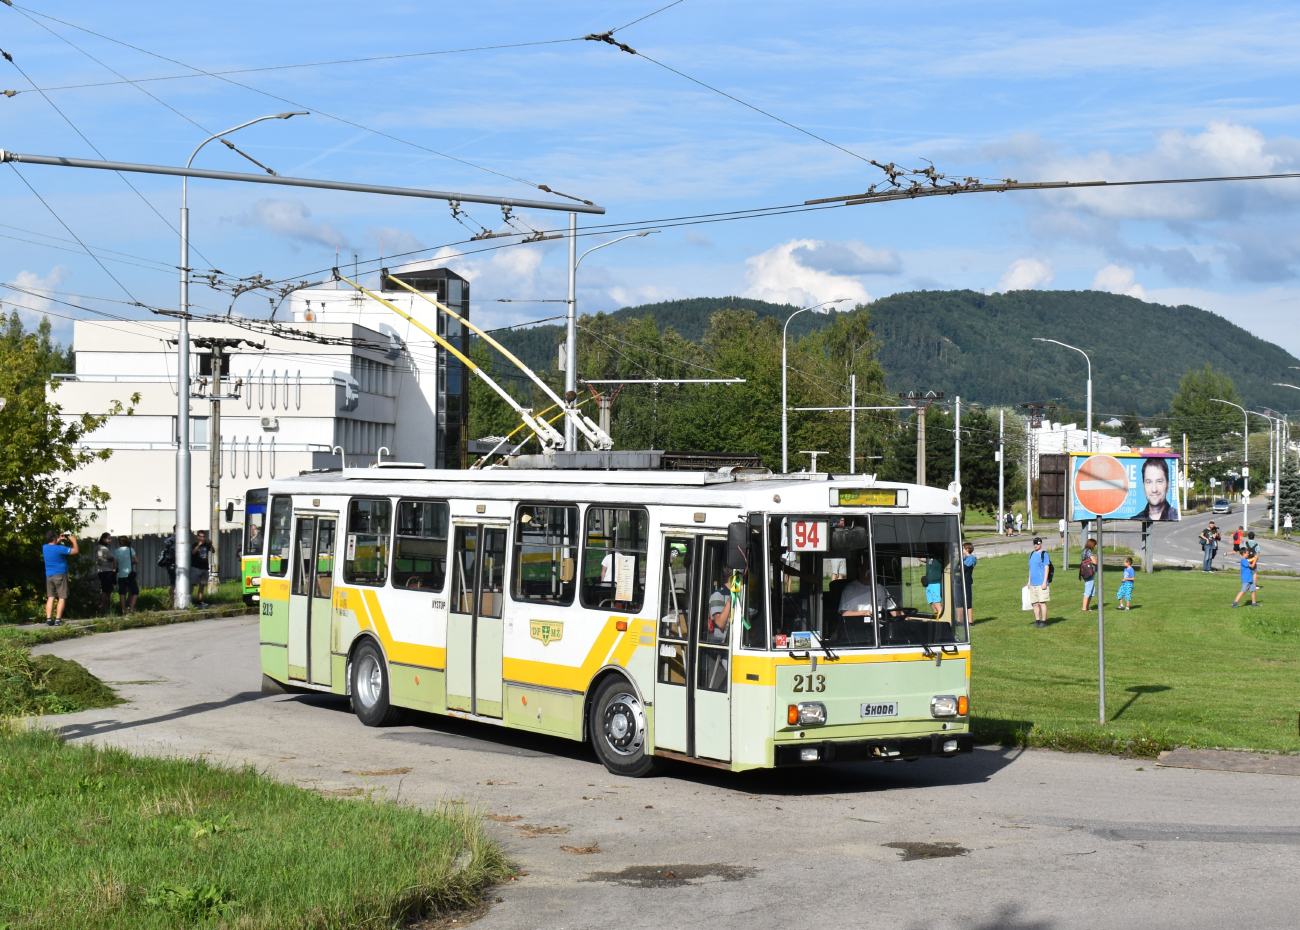 Žilina, Škoda 14Tr14/7 № 213; Žilina — Slávnostné rozlúčenie s trolejbusmi typu Škoda 14Tr & 15Tr (17.08.2019) • Farewell ceremony with Škoda 14Tr & 15Tr trolleybuses (17.08.2019)